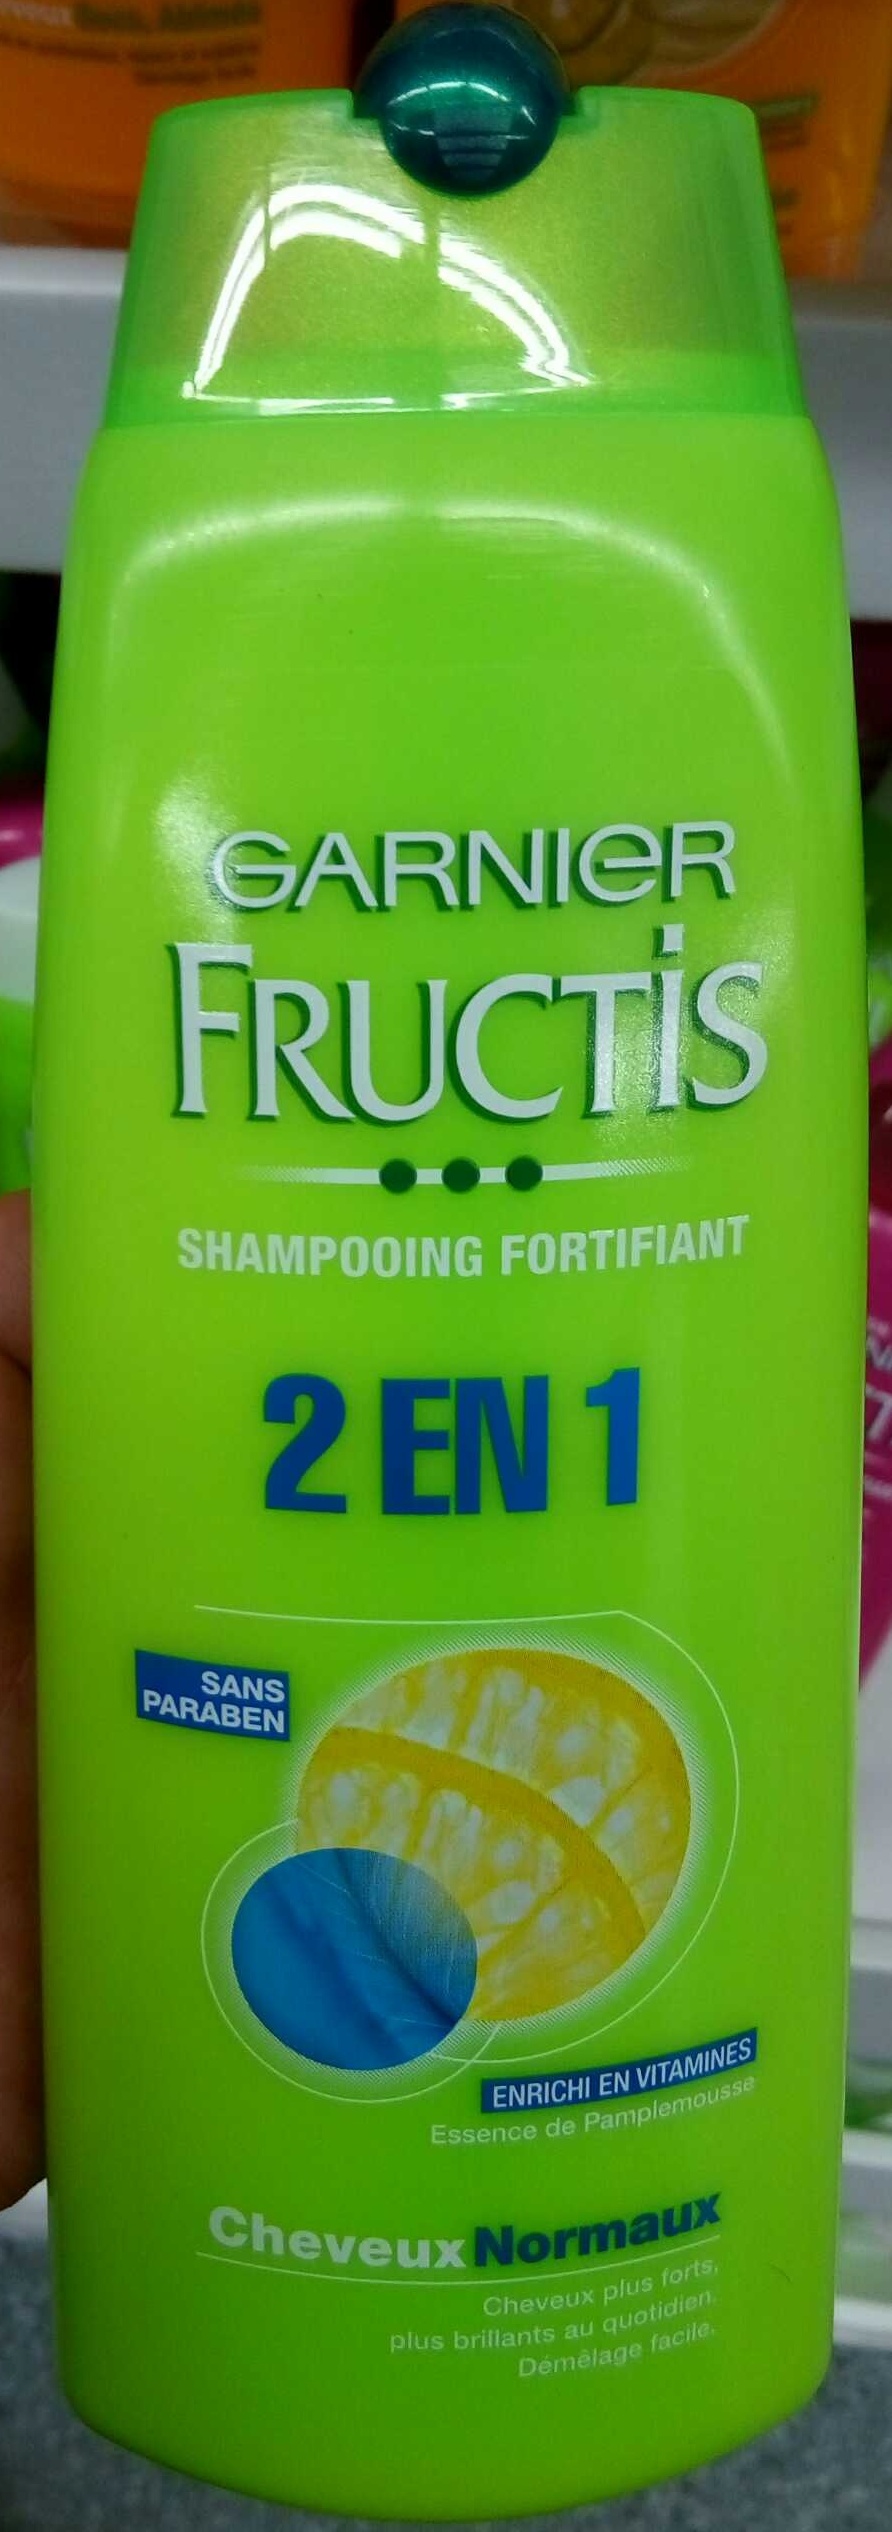 Fructis Shampooing fortifiant 2 en 1 - Продукт - fr